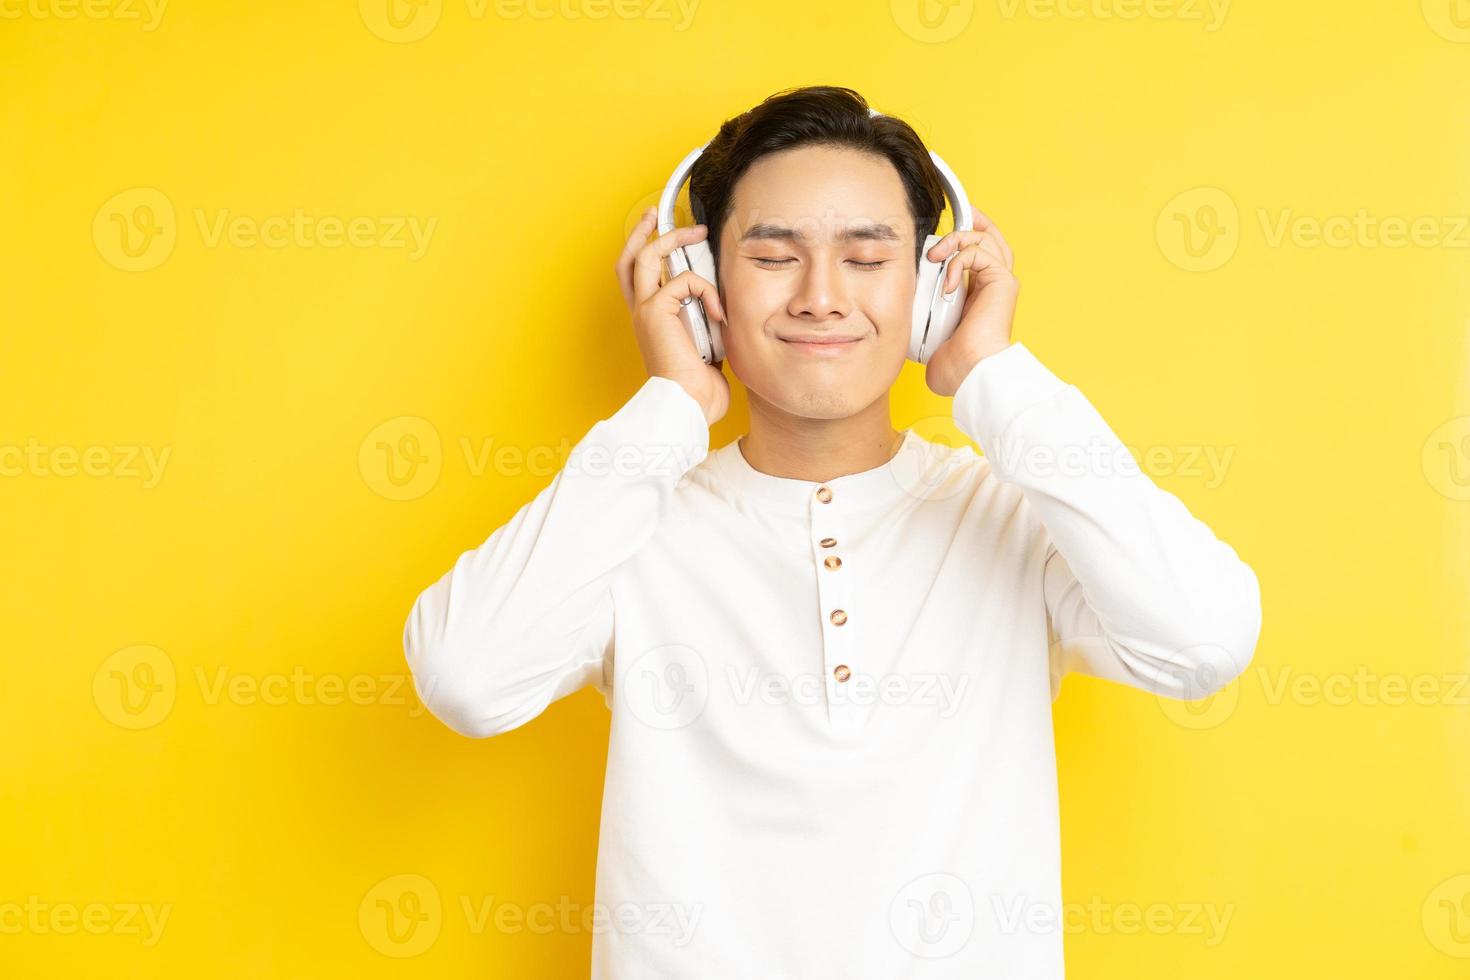 foto de homem asiático de camisa branca ouvindo música com os olhos fechados em fundo amarelo